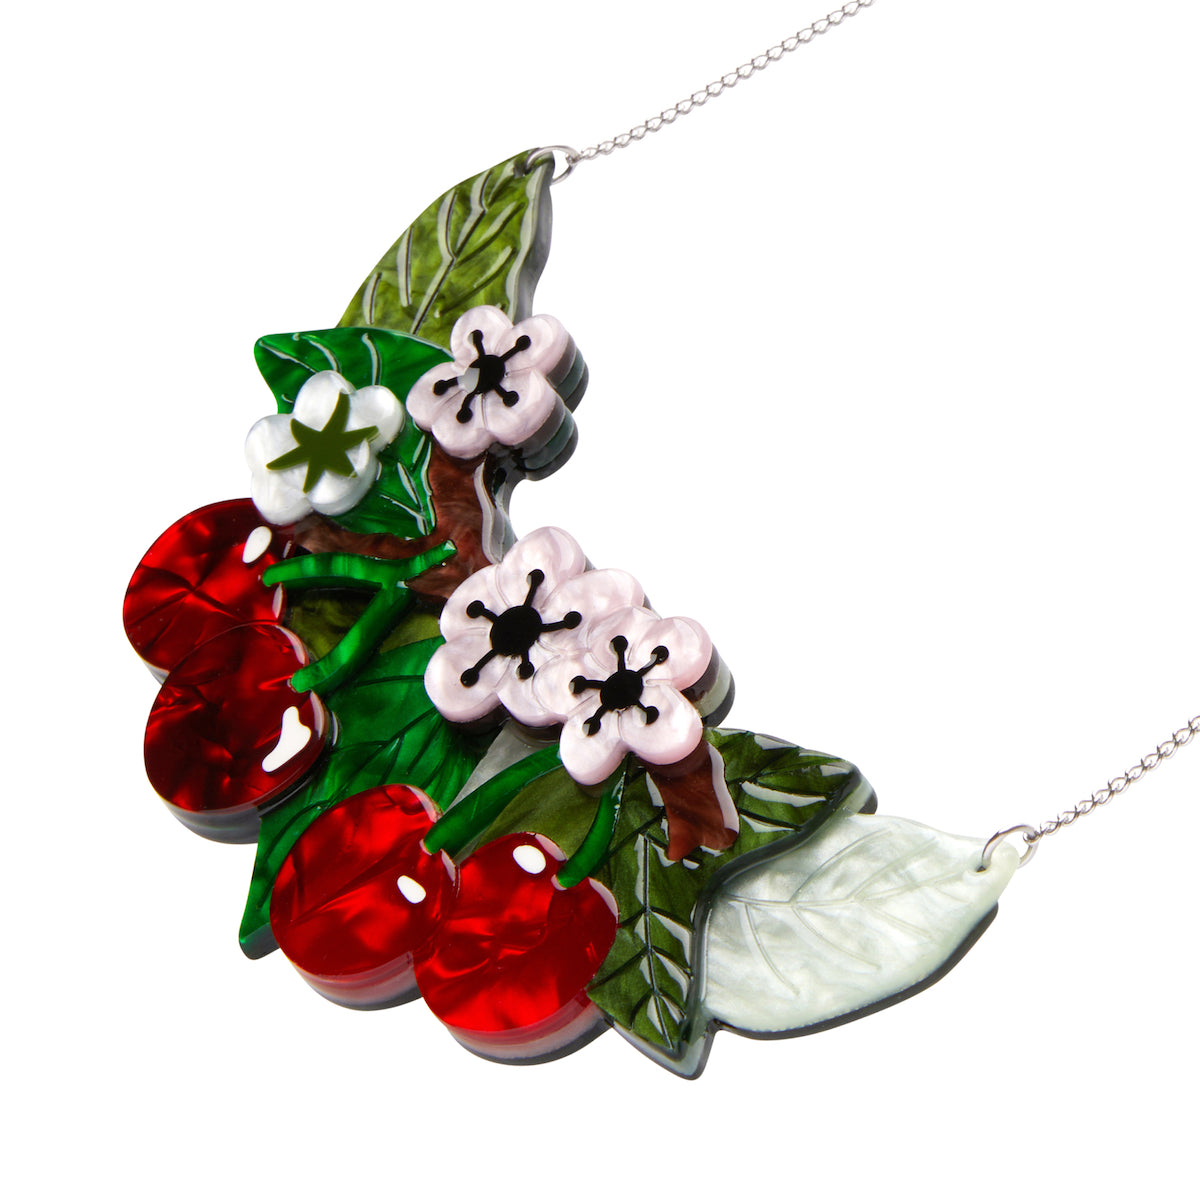 Blossoming Cherries Statement Necklace by Erstwilder